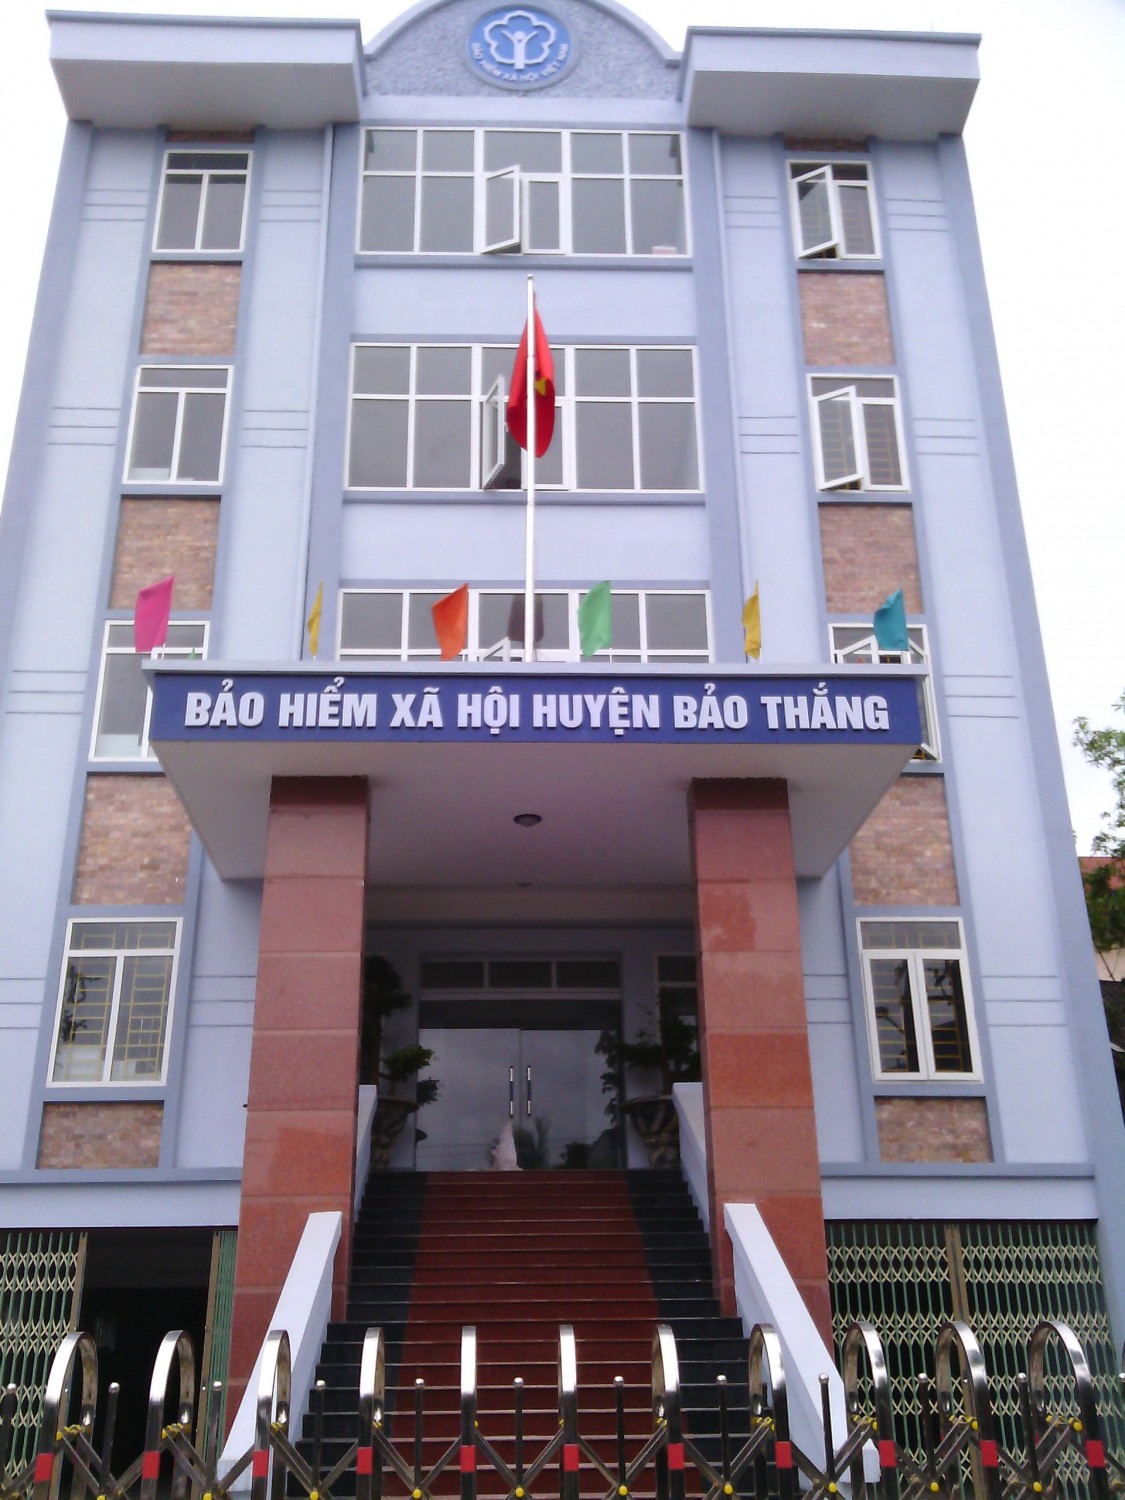 Ngày 24/4/2012, Nghiệm thu công trình mạng LAN trụ sở BHXH huyện bảo thắng